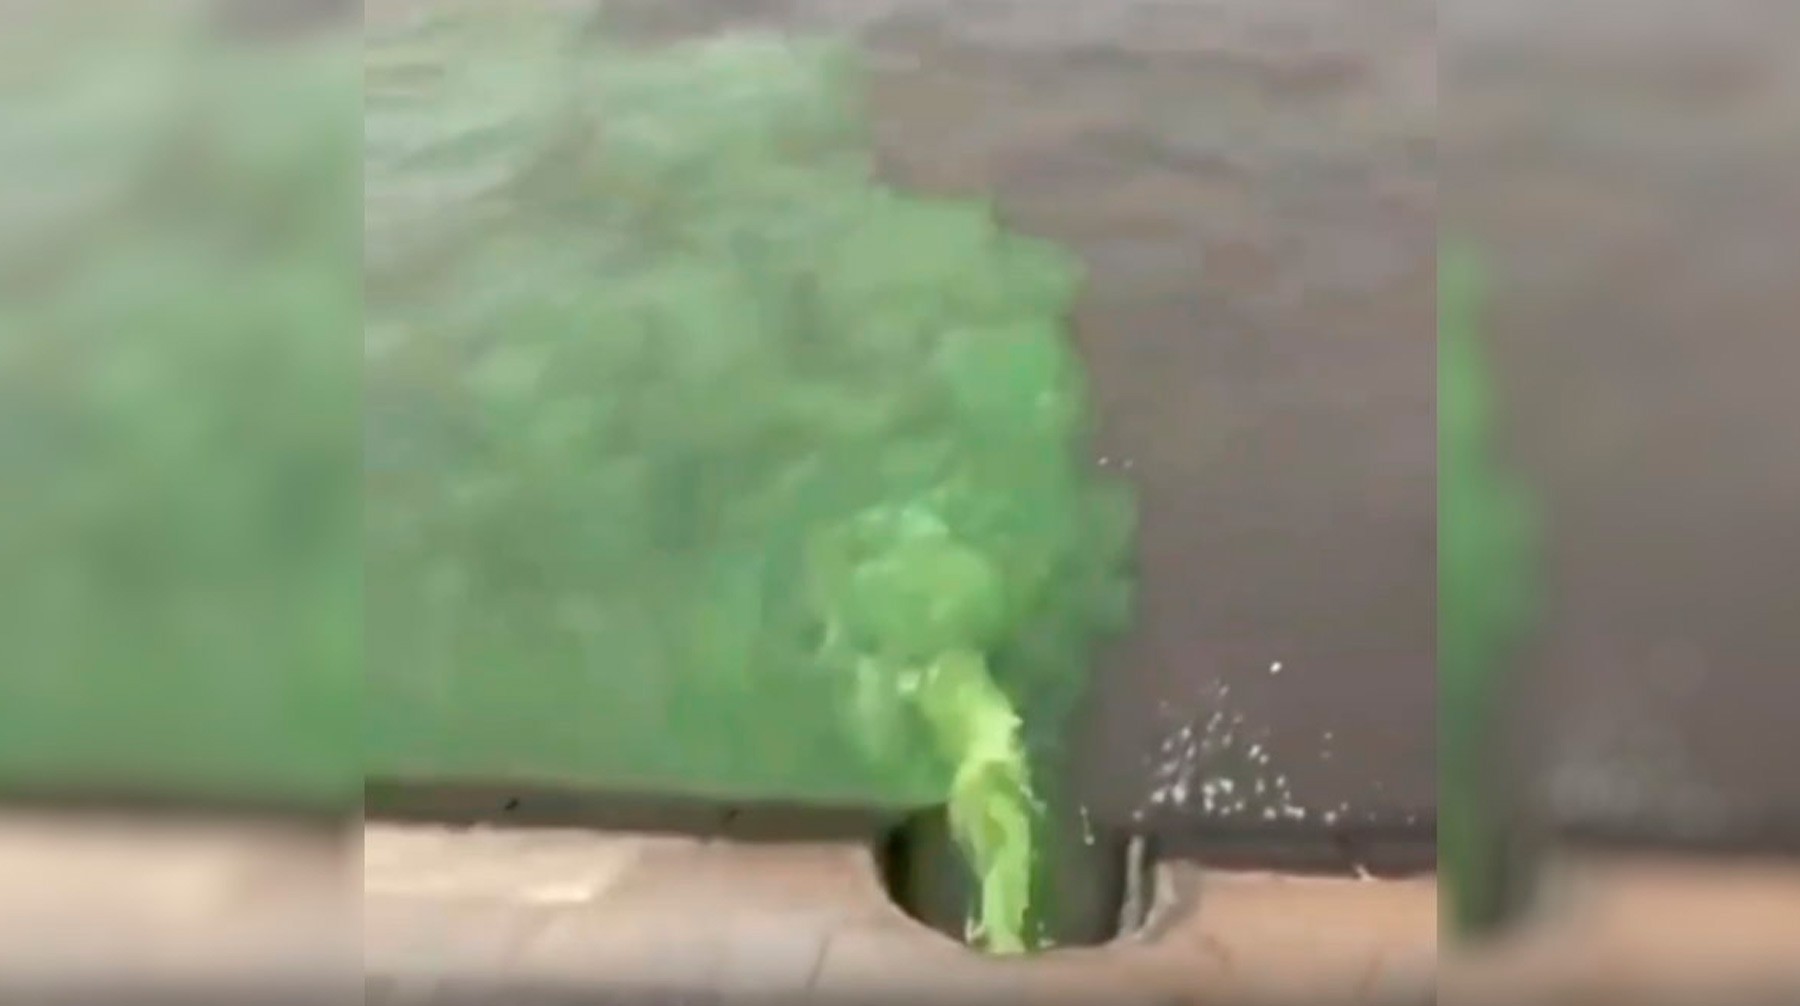 Dailystorm - Зеленая жидкость вливается в Москву-реку: СКР проверяет причины ЧП в центре столицы